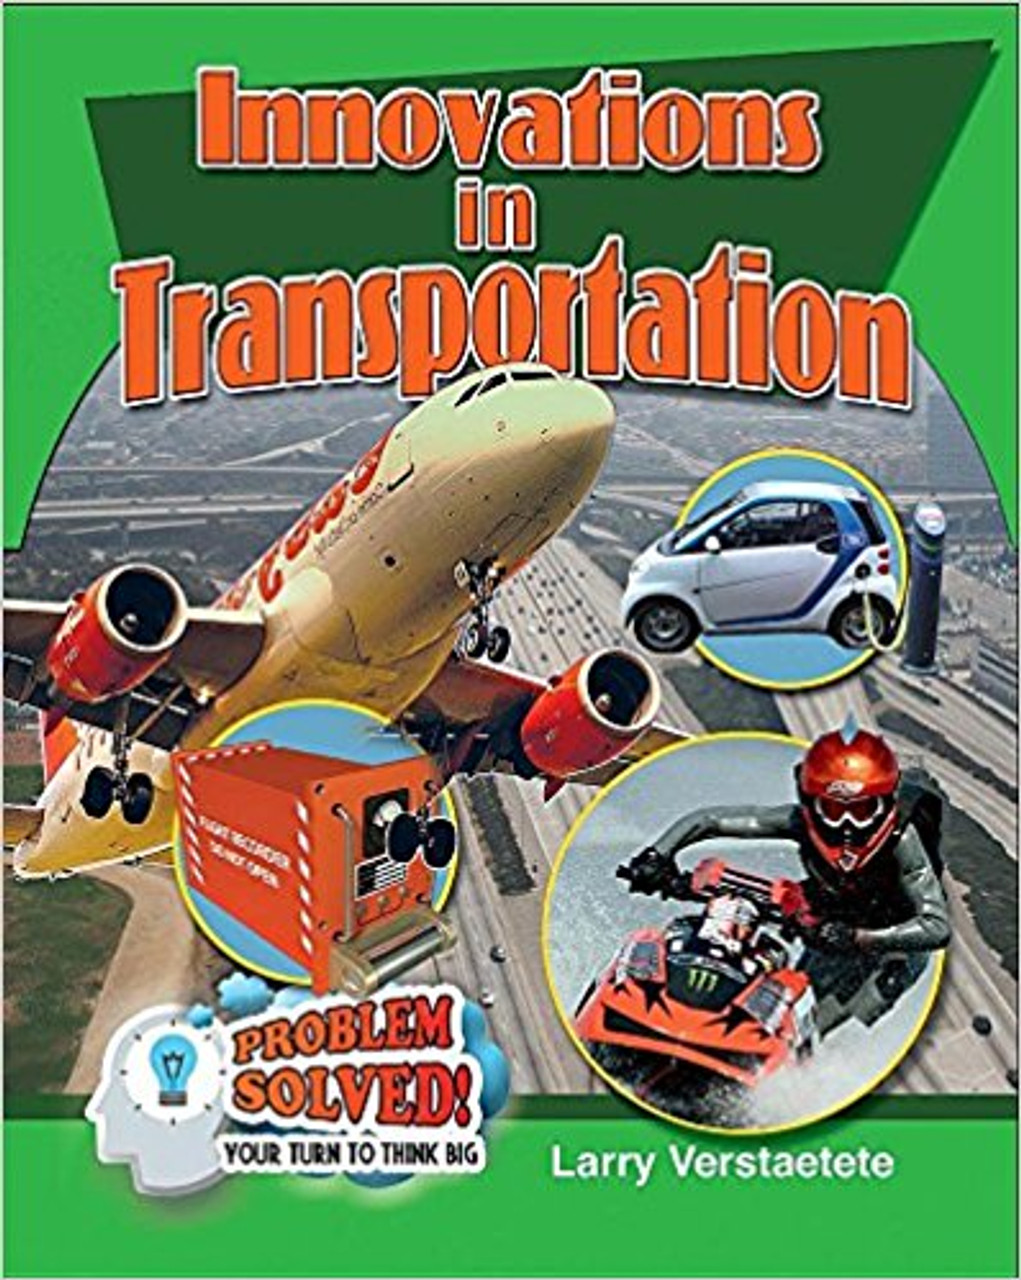 Innovations in Transportation by Larry Verstraete